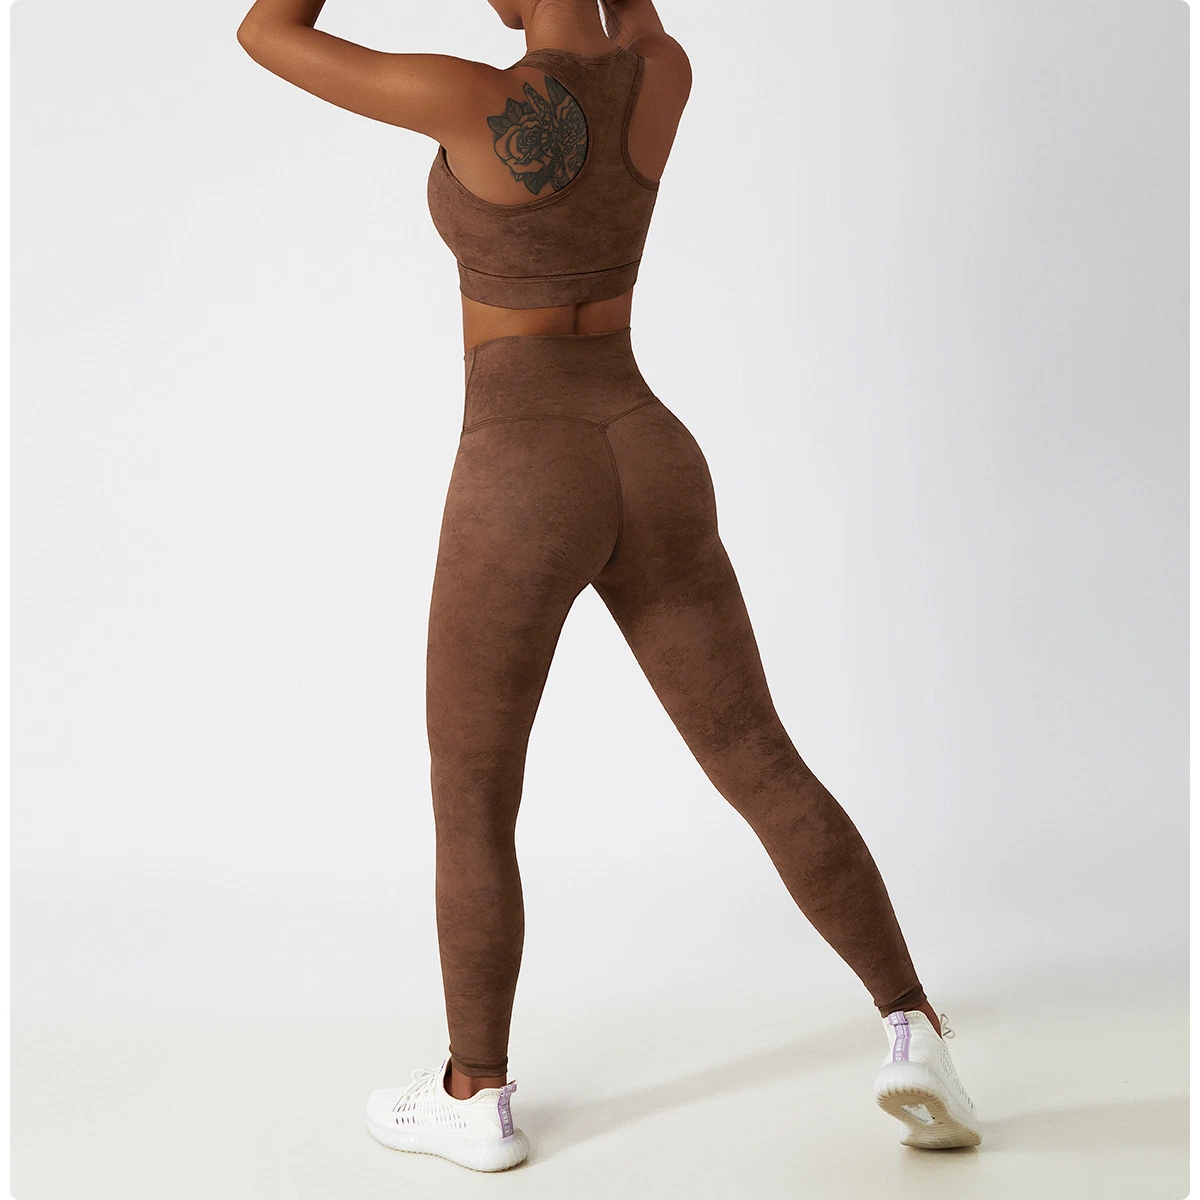 Frauen Yoga Hosen Gym Training Kleidung Push-up Leggings Elastische Hose Mit Hohem Bund Und Tie Dye Leggings Set Bekleidung